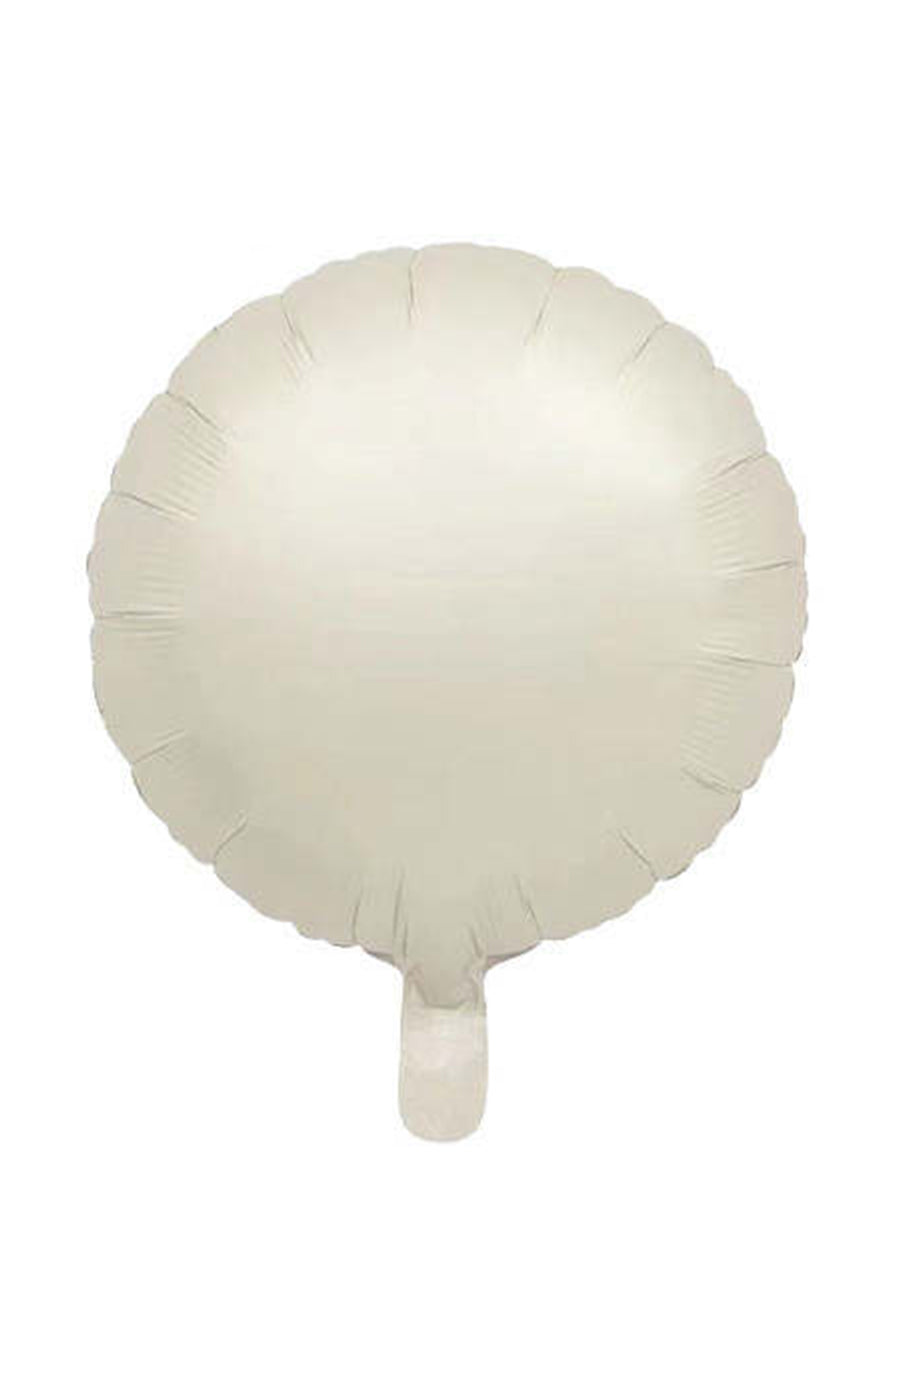 matte-creame-round-balloon.jpg